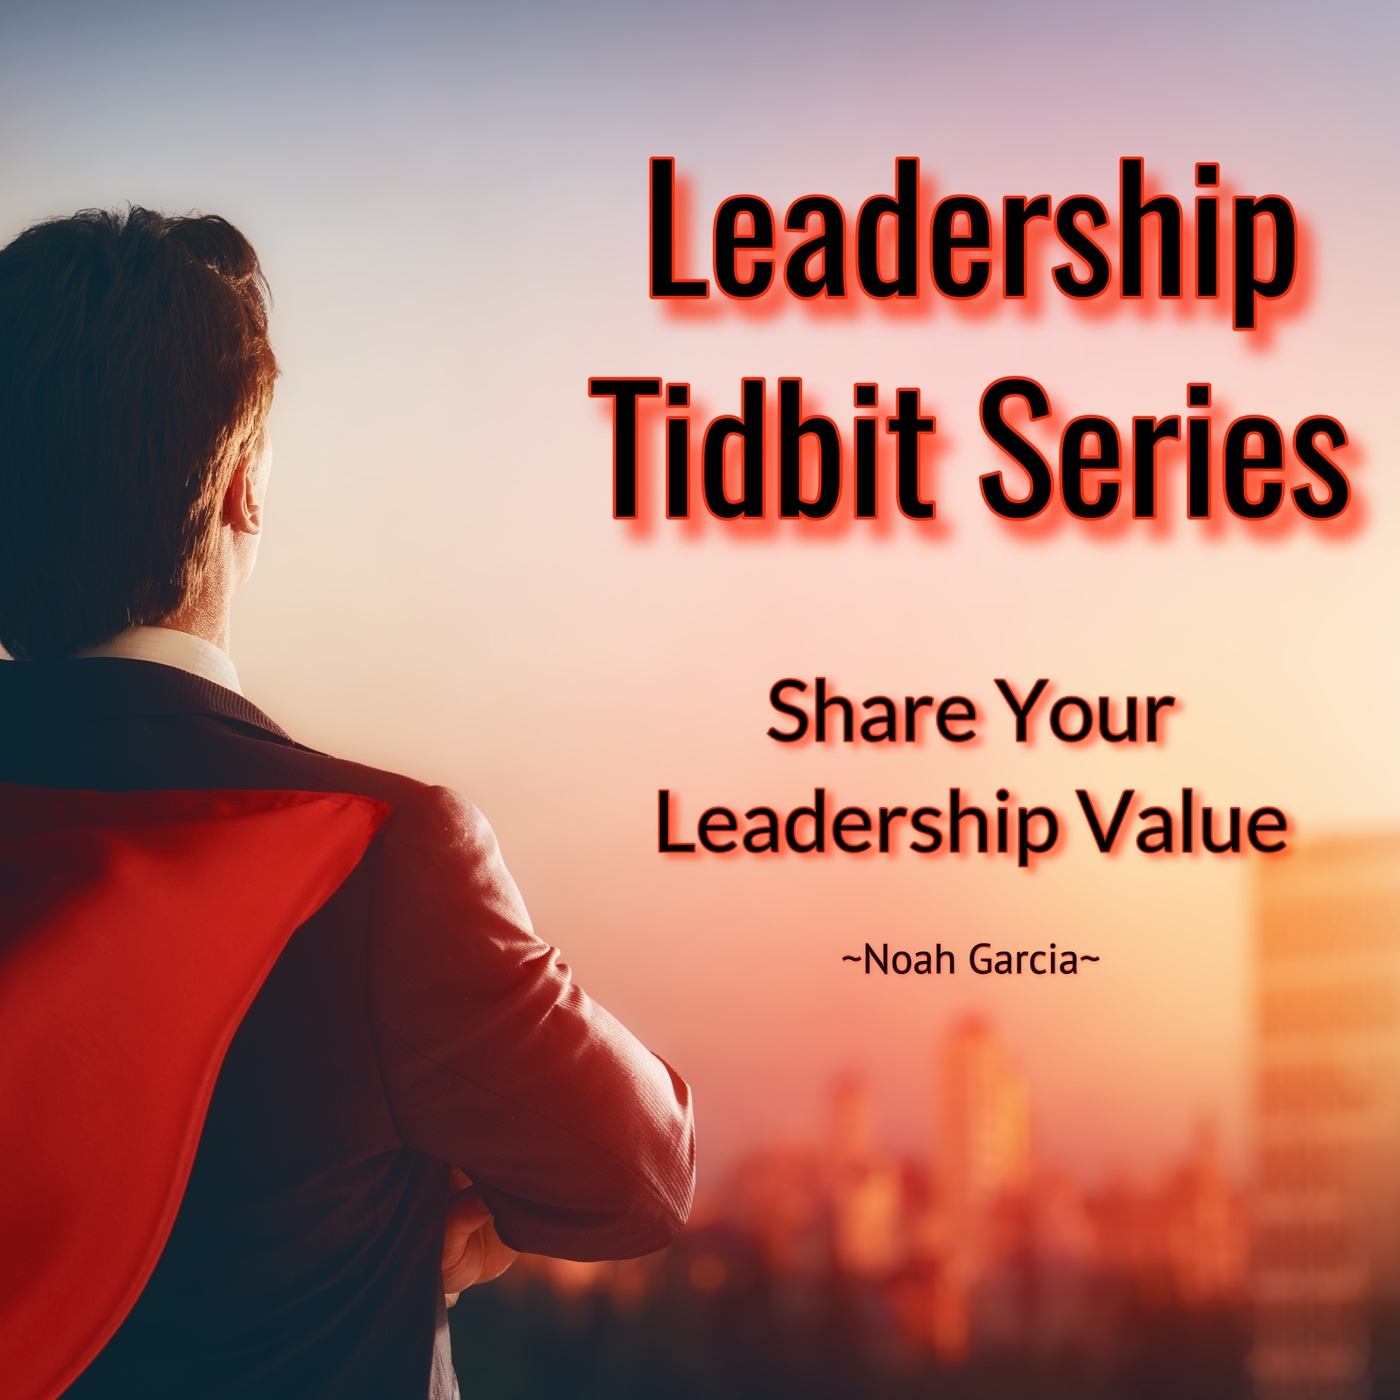 Leadership Tidbit Series: Share Your Leadership Value